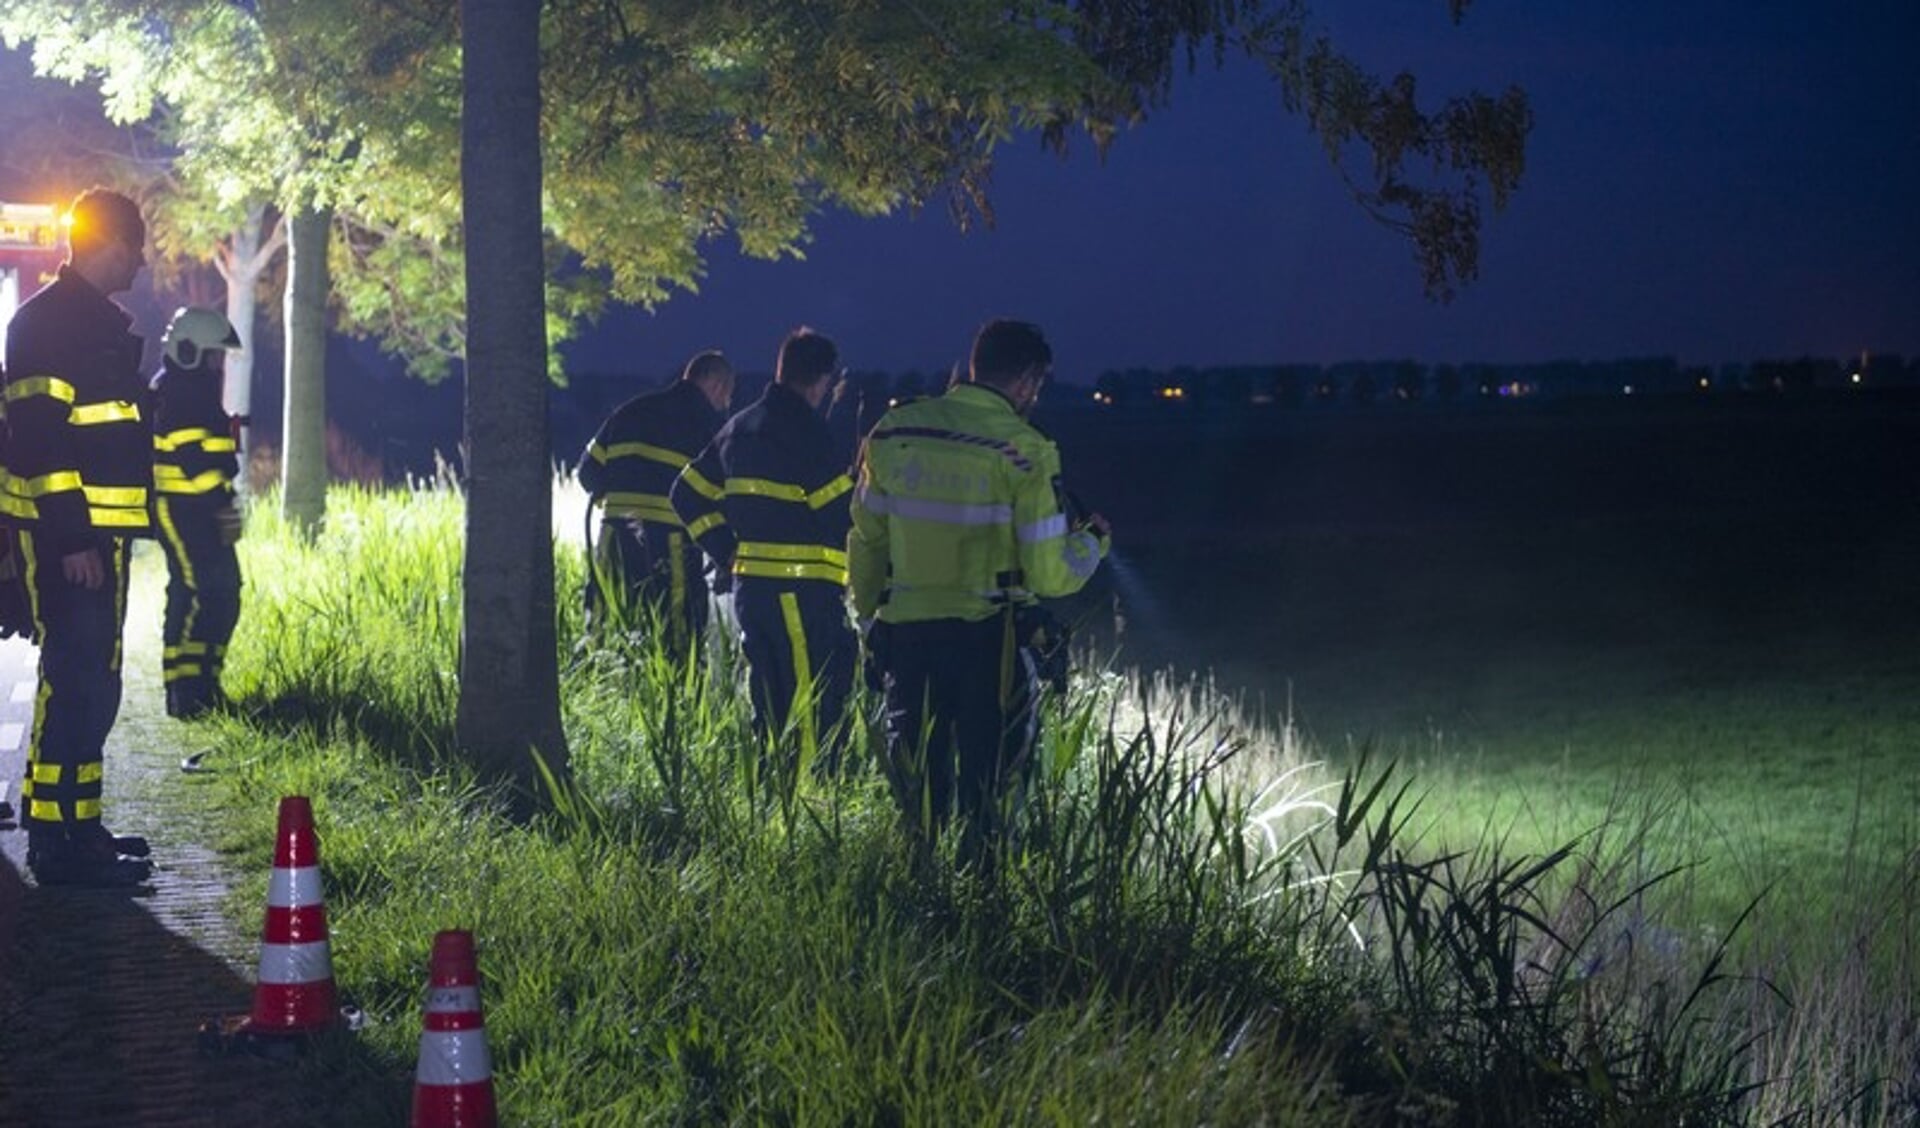 De brandweer van Nieuw-Vossemeer heeft vrijdagavond aan de Rubeerdijk tussen Nieuw-Vossemeer en Steenbergen een kleine buitenbrand geblust.